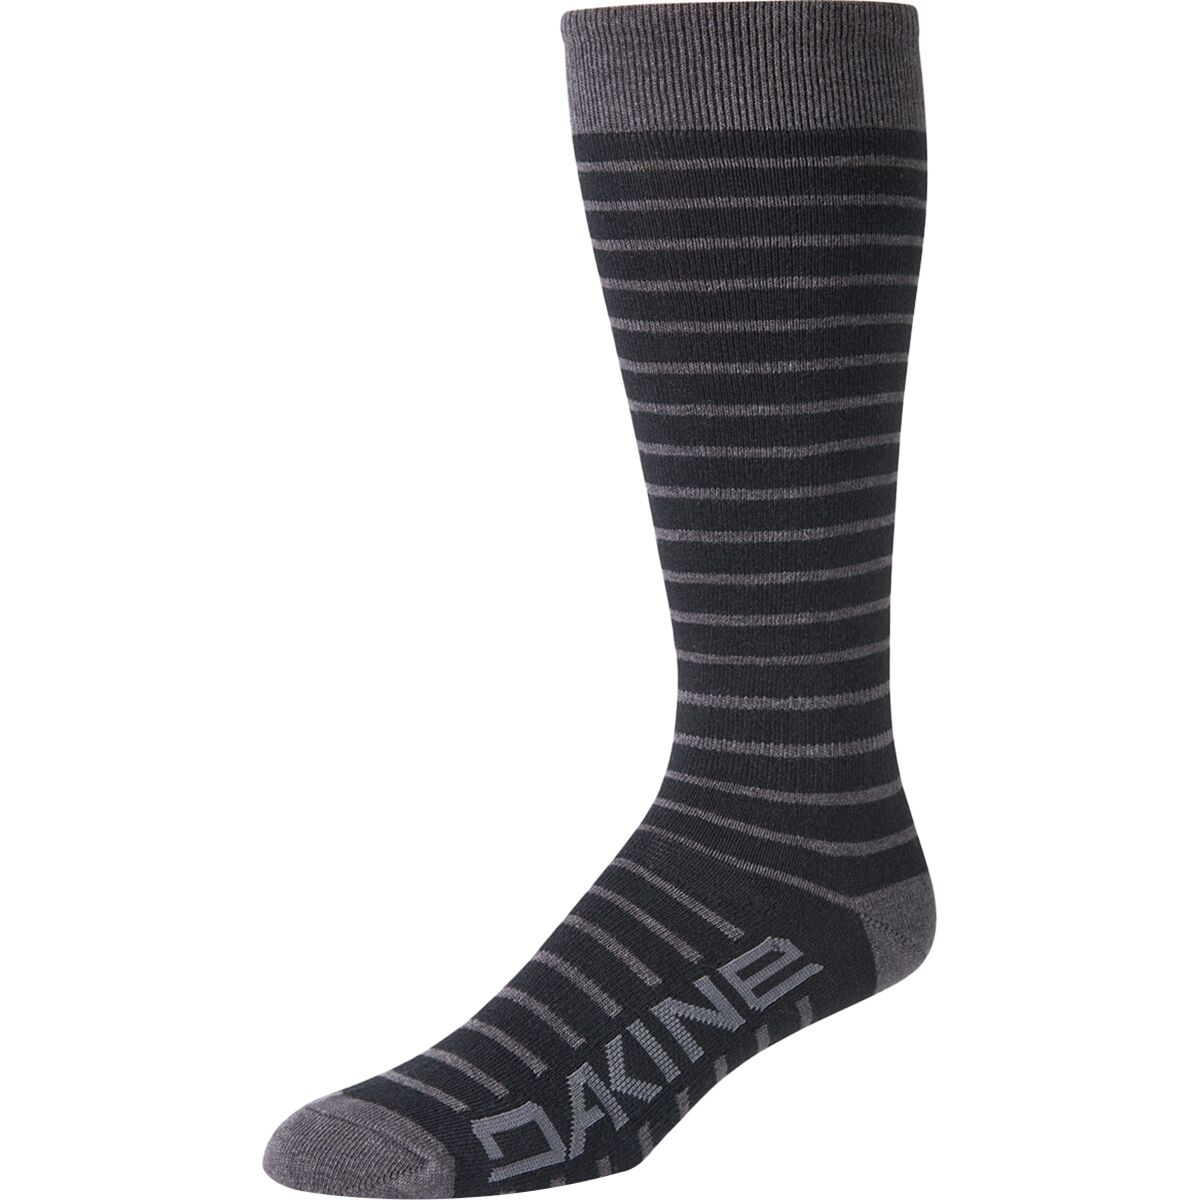 DAKINE Thinline Sock - Women's